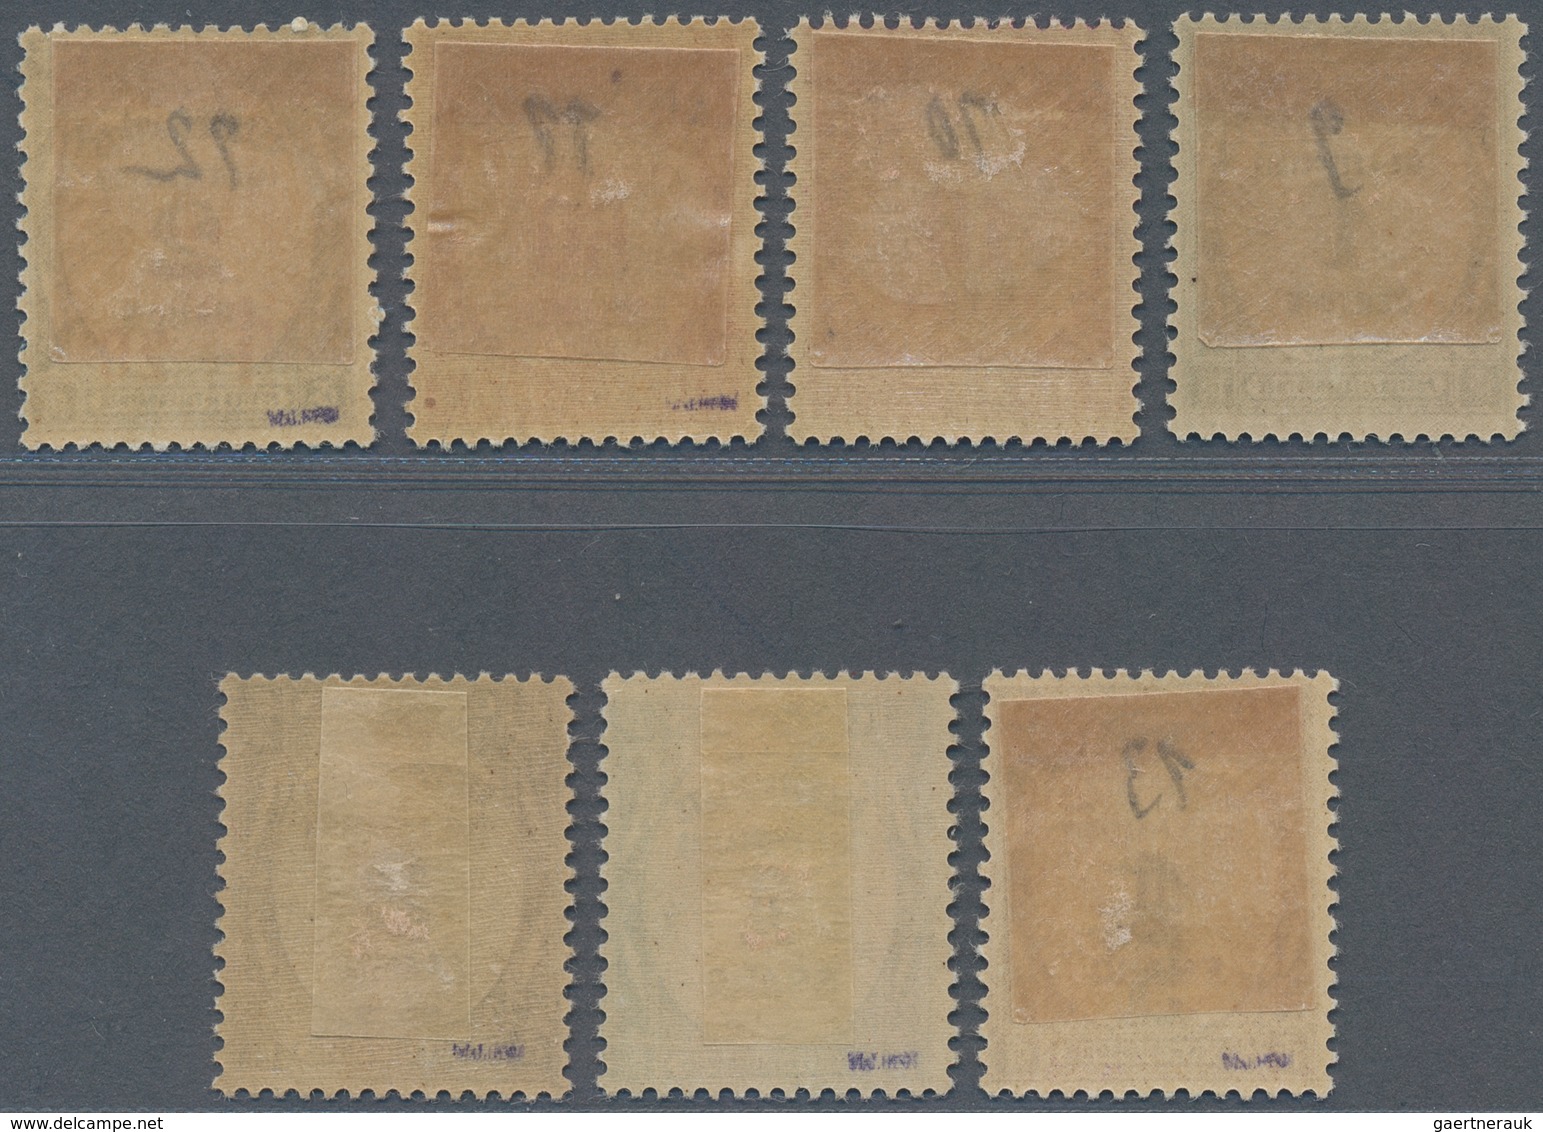 Andorra - Französische Post - Portomarken: 1931, 1 C - 5 Fr Postage Dues, 7 Different Values, VF MLH - Briefe U. Dokumente